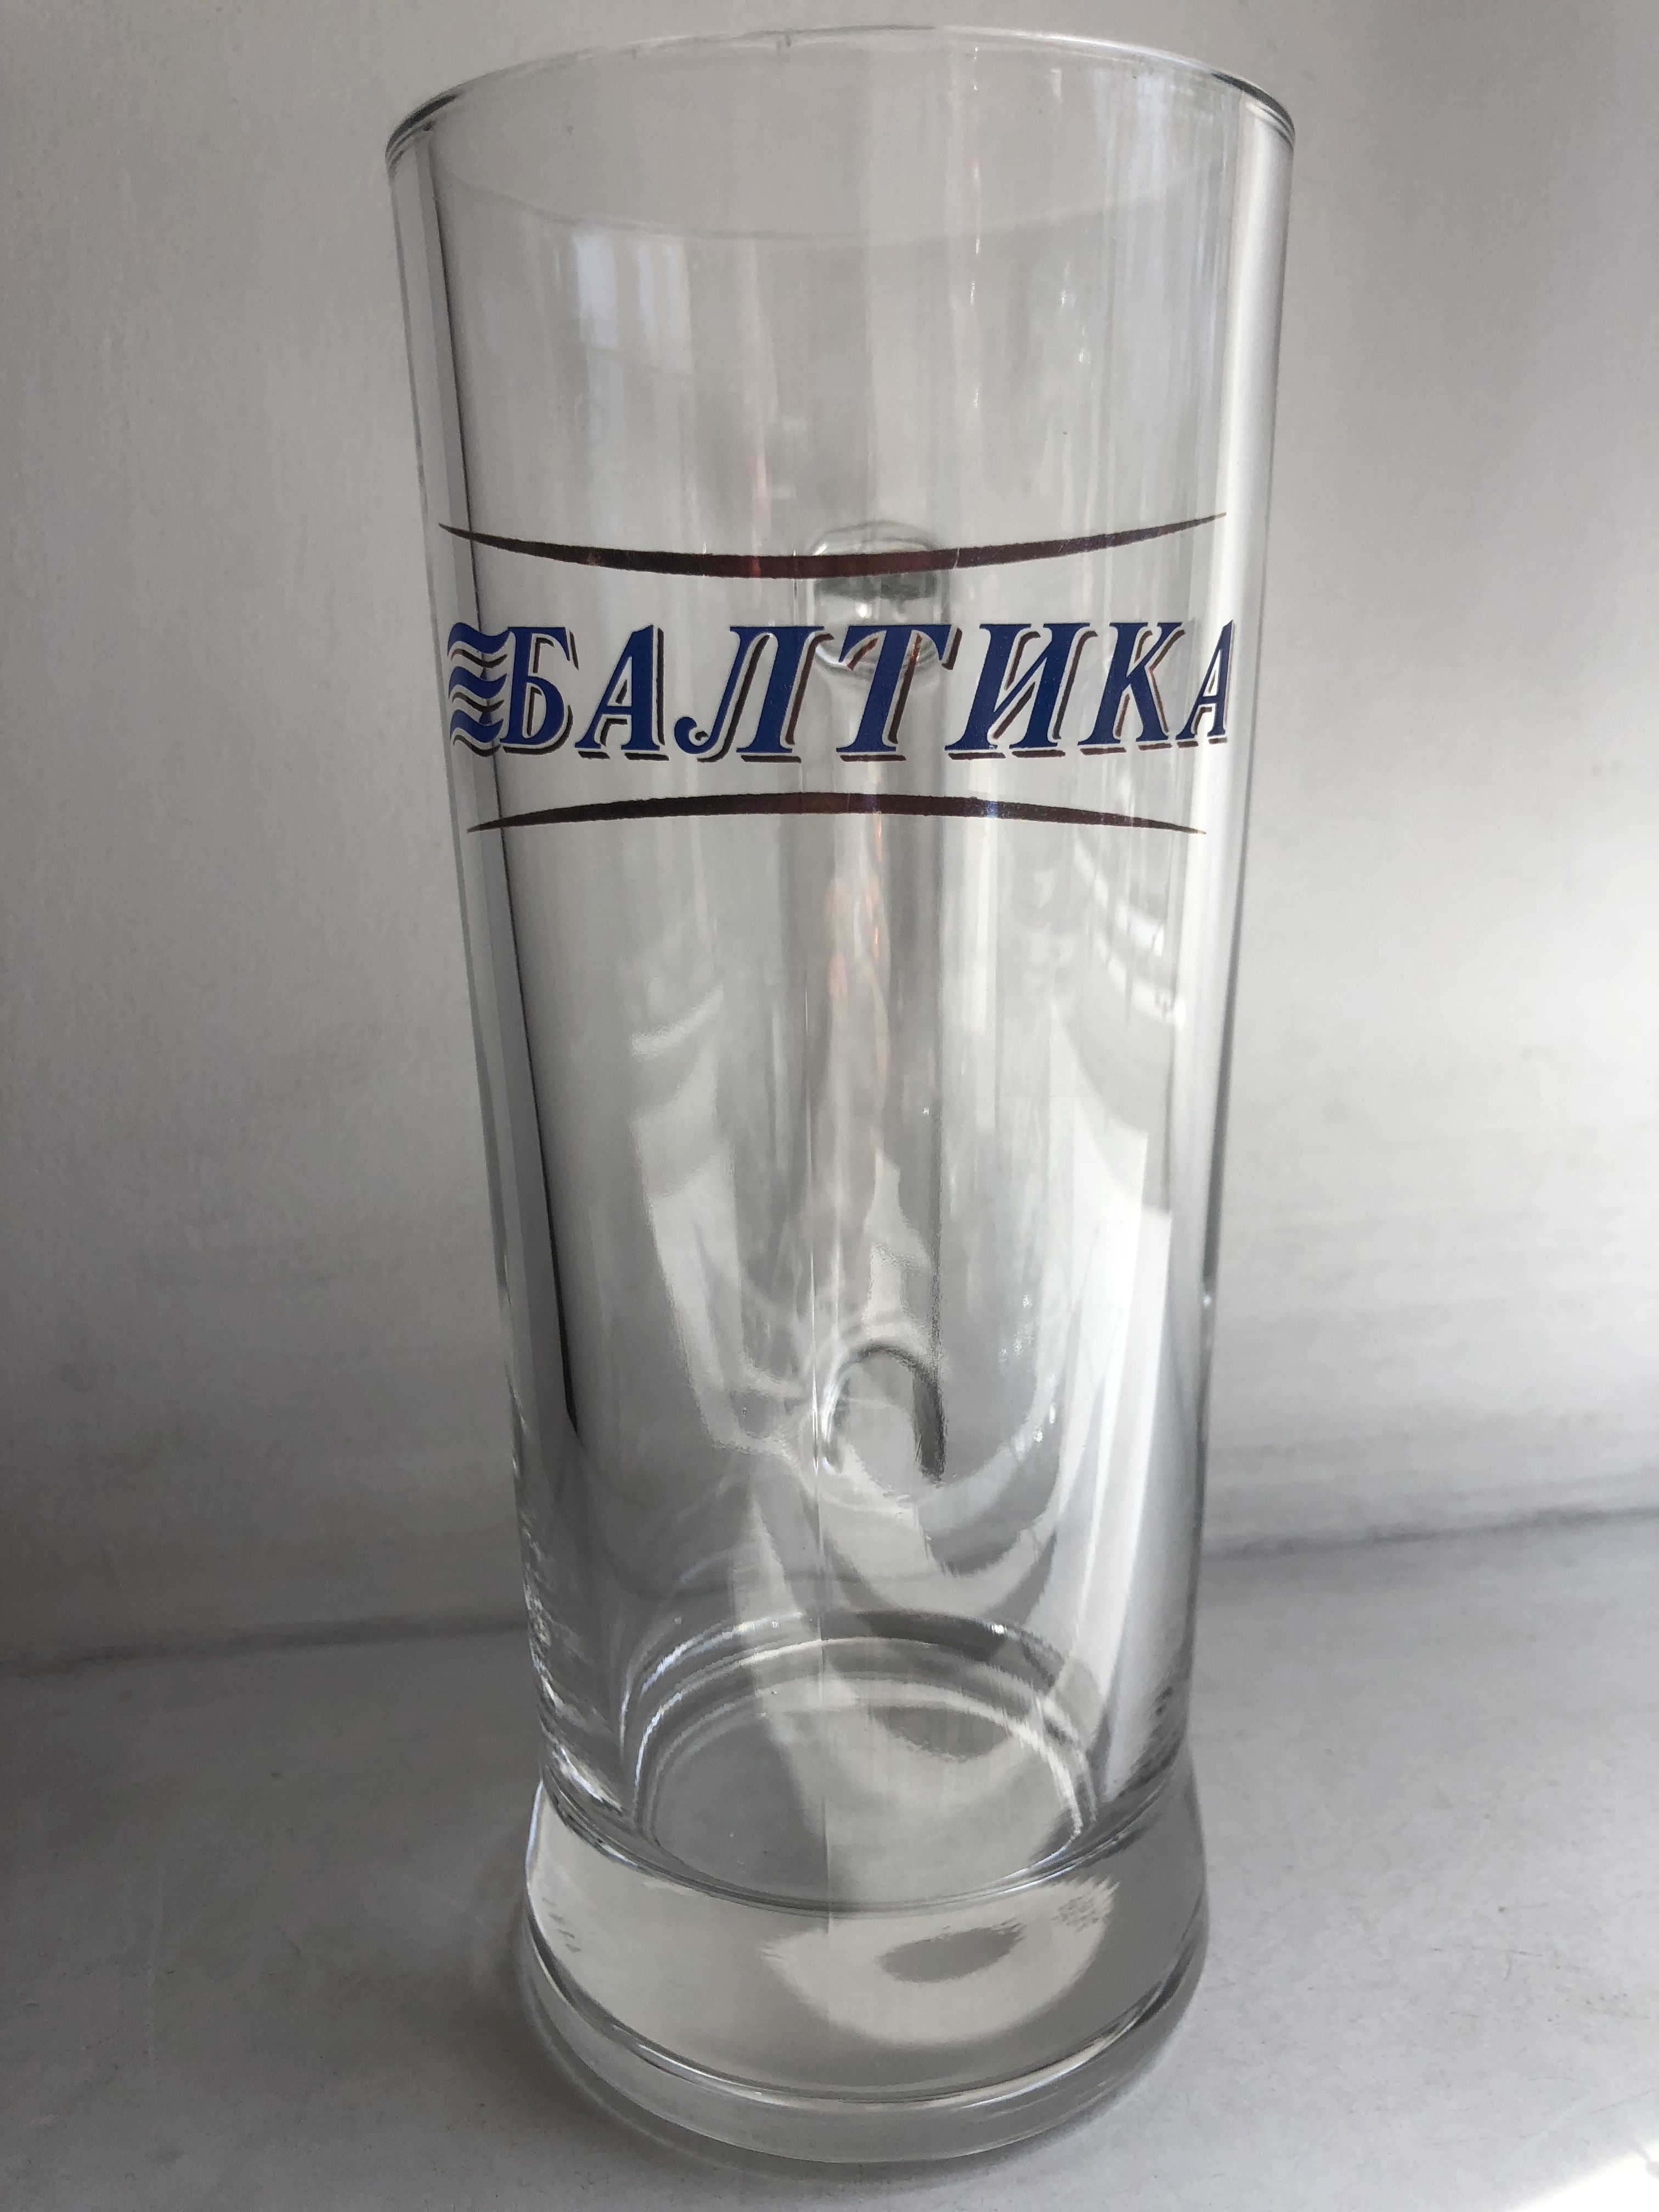 Балтика (кружка) 0,5 от компании Нортэна